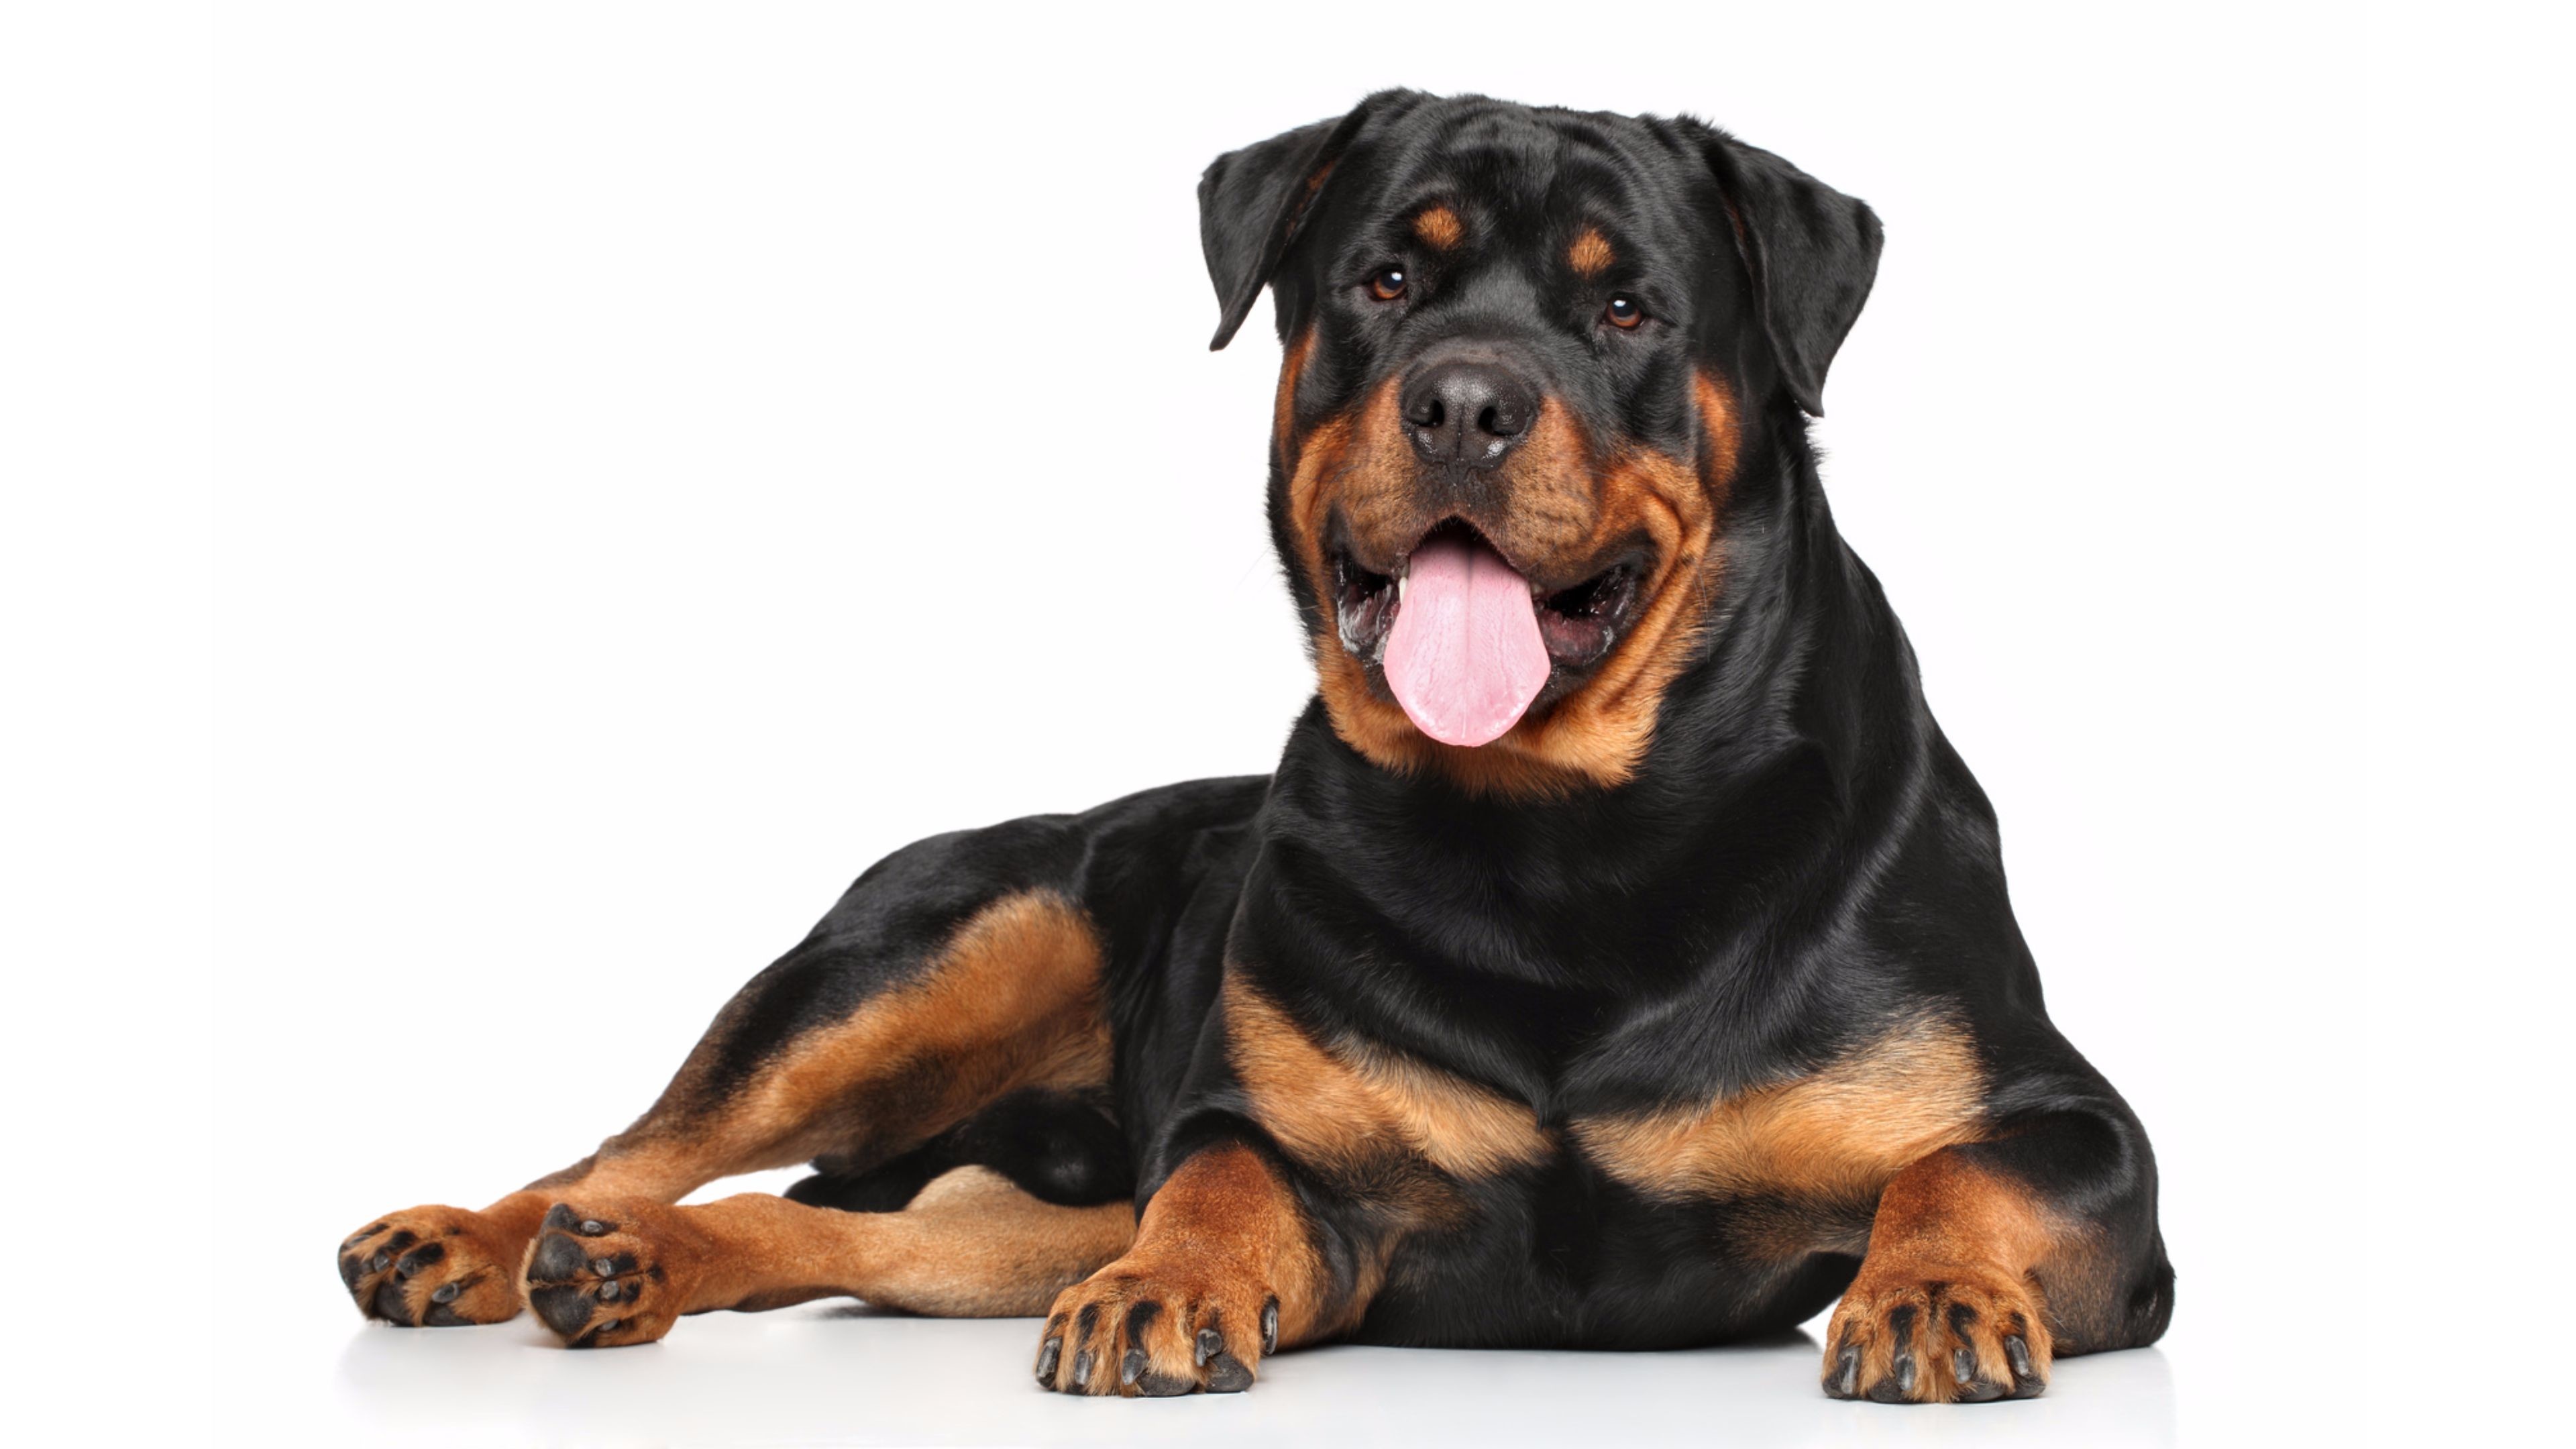 Dog Rottweiler Puppies , HD Wallpaper & Backgrounds